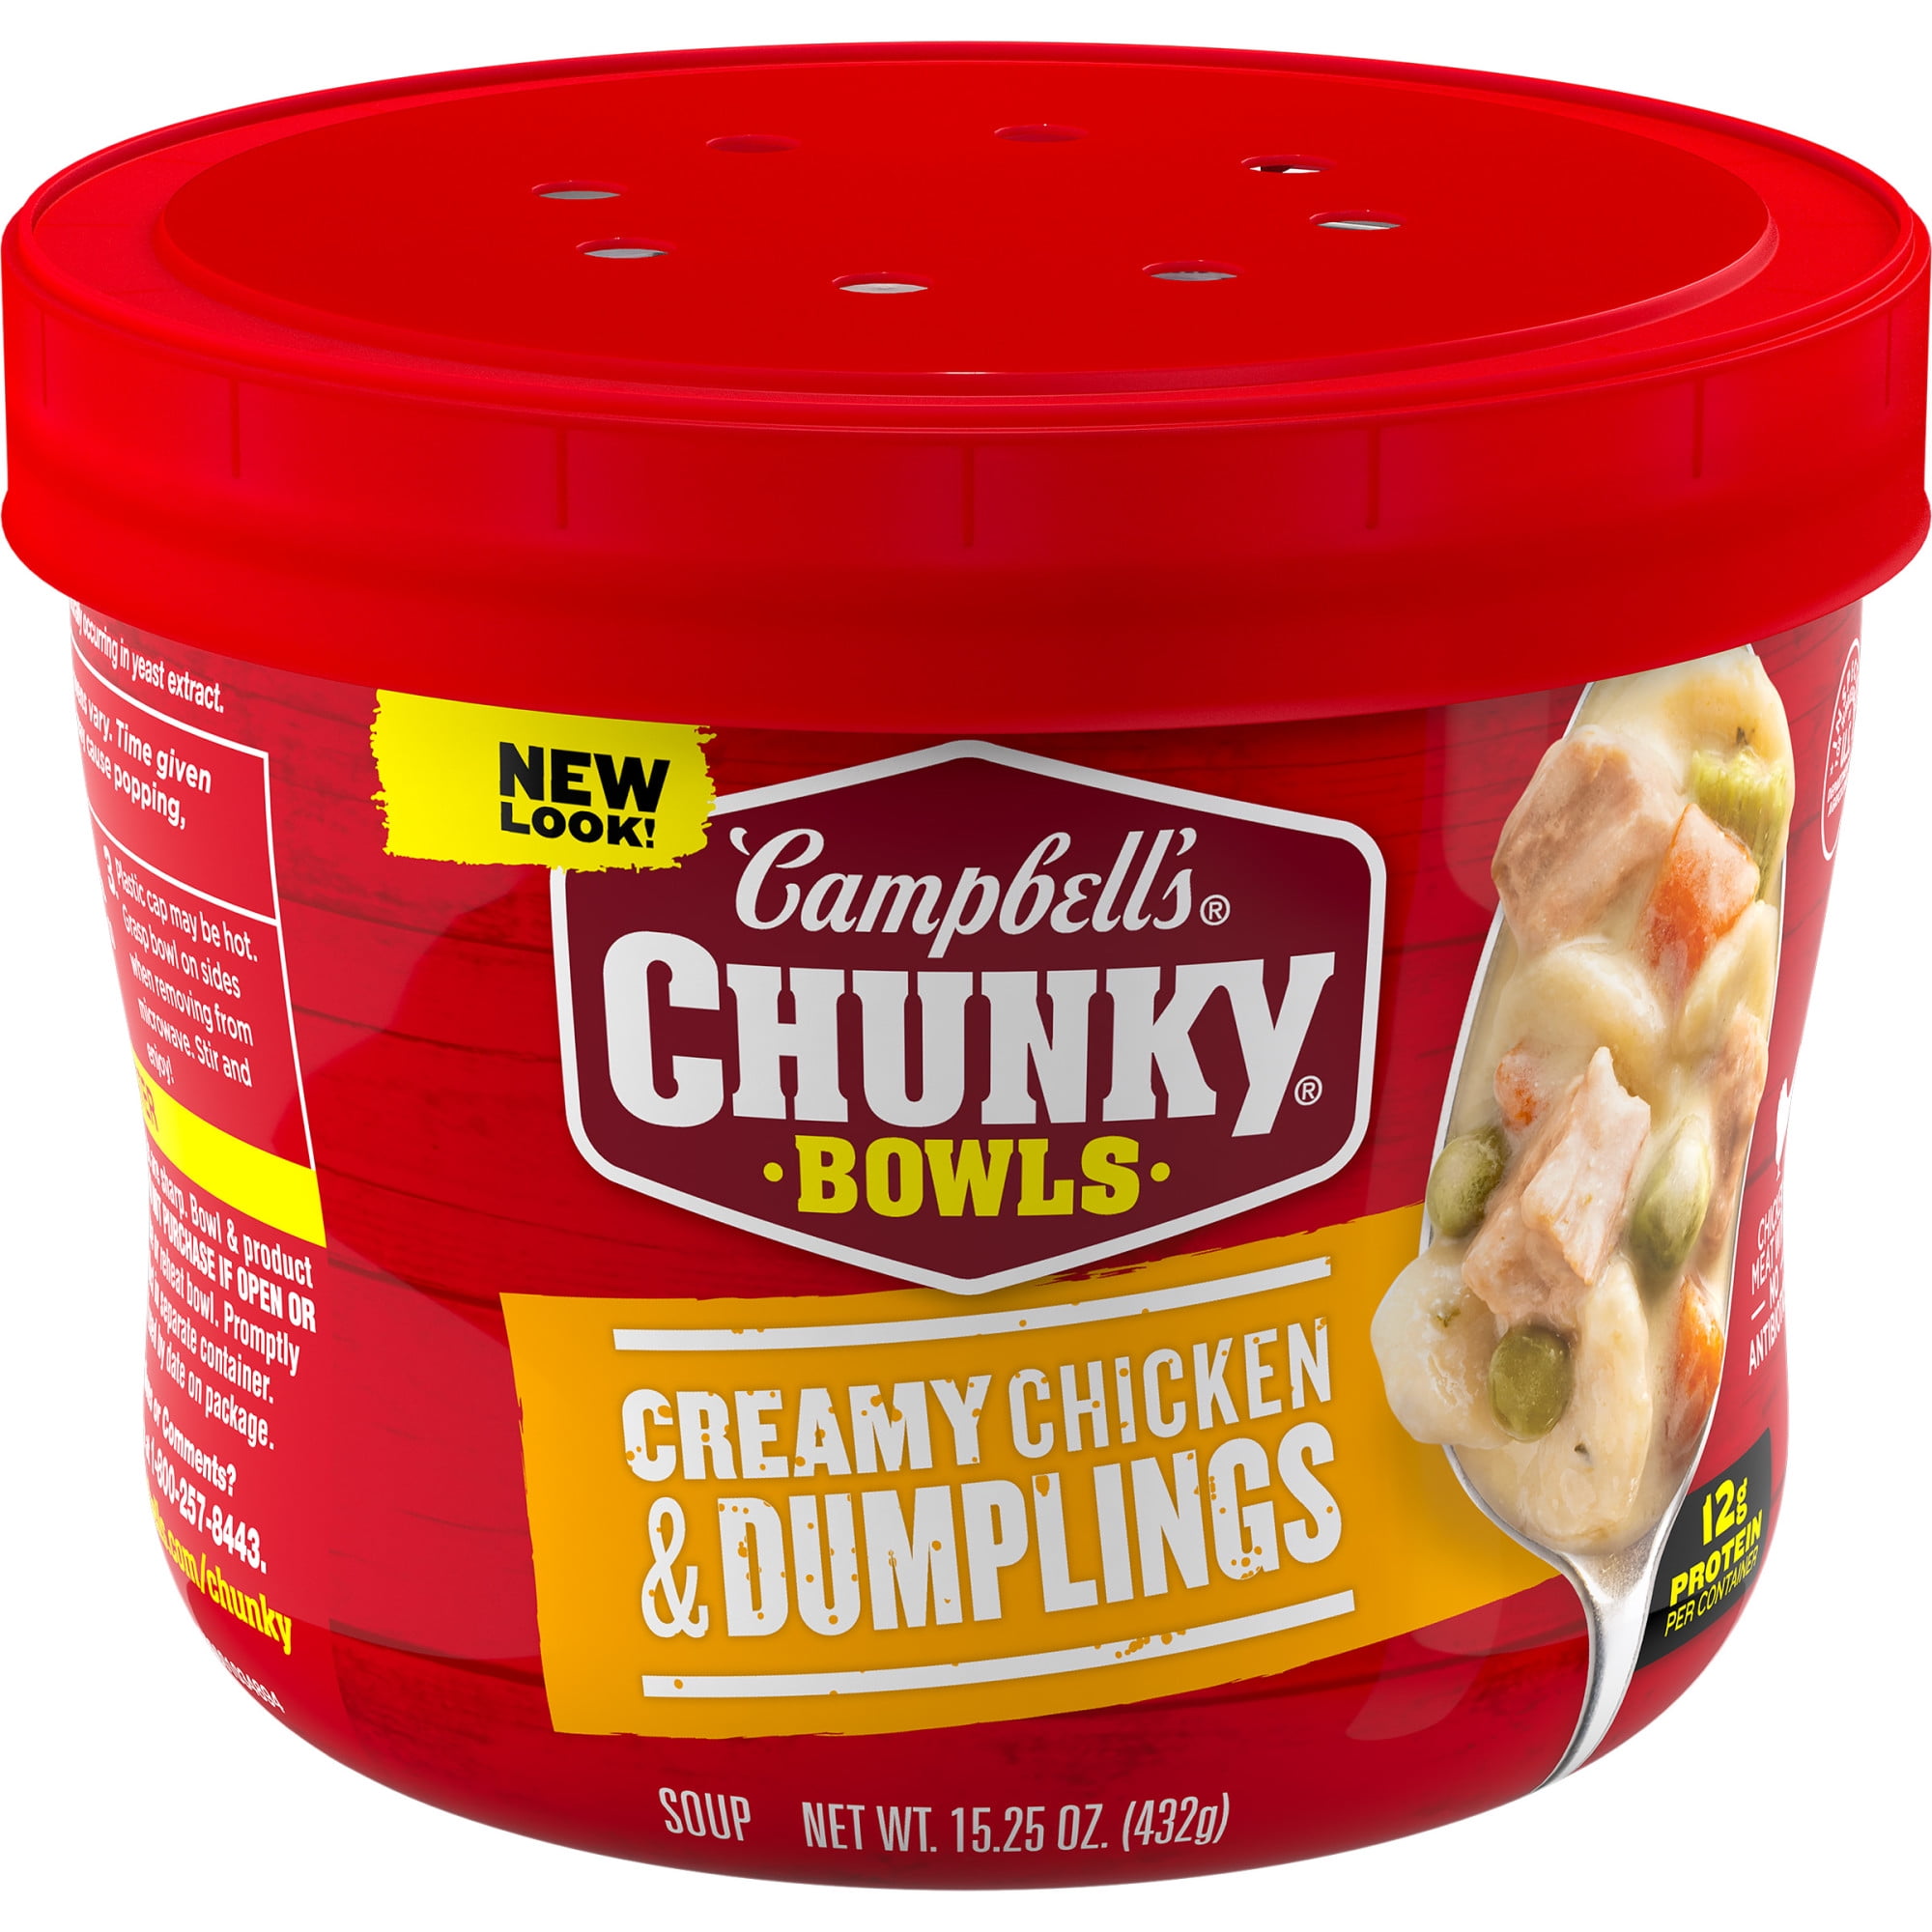 Creamy Chicken and Dumplings - Great Grub, Delicious Treats